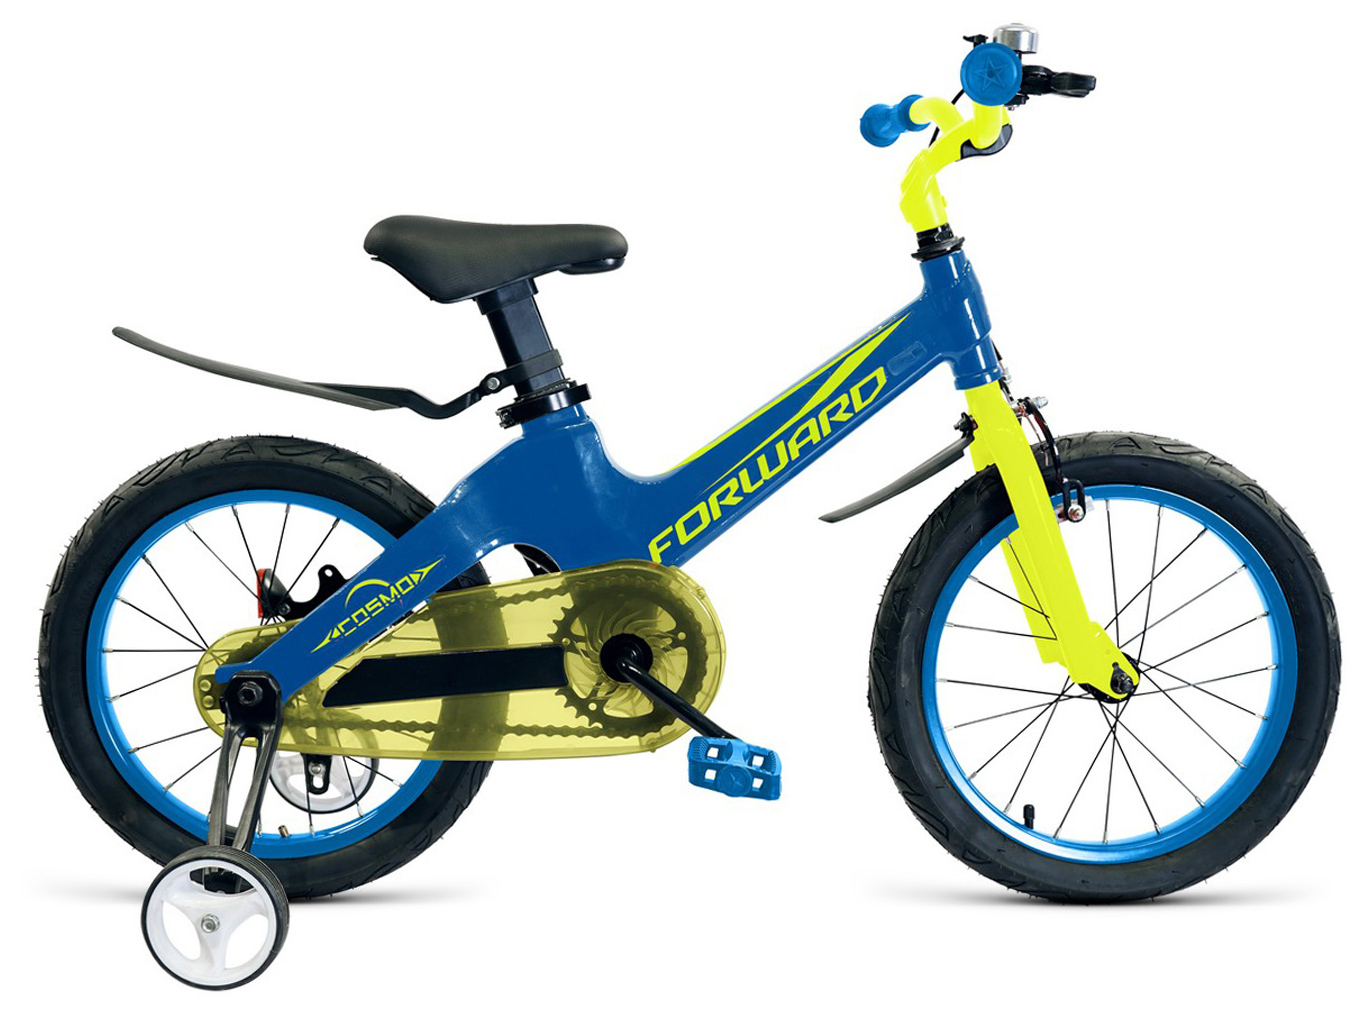  Отзывы о Детском велосипеде Forward Cosmo 18 2019